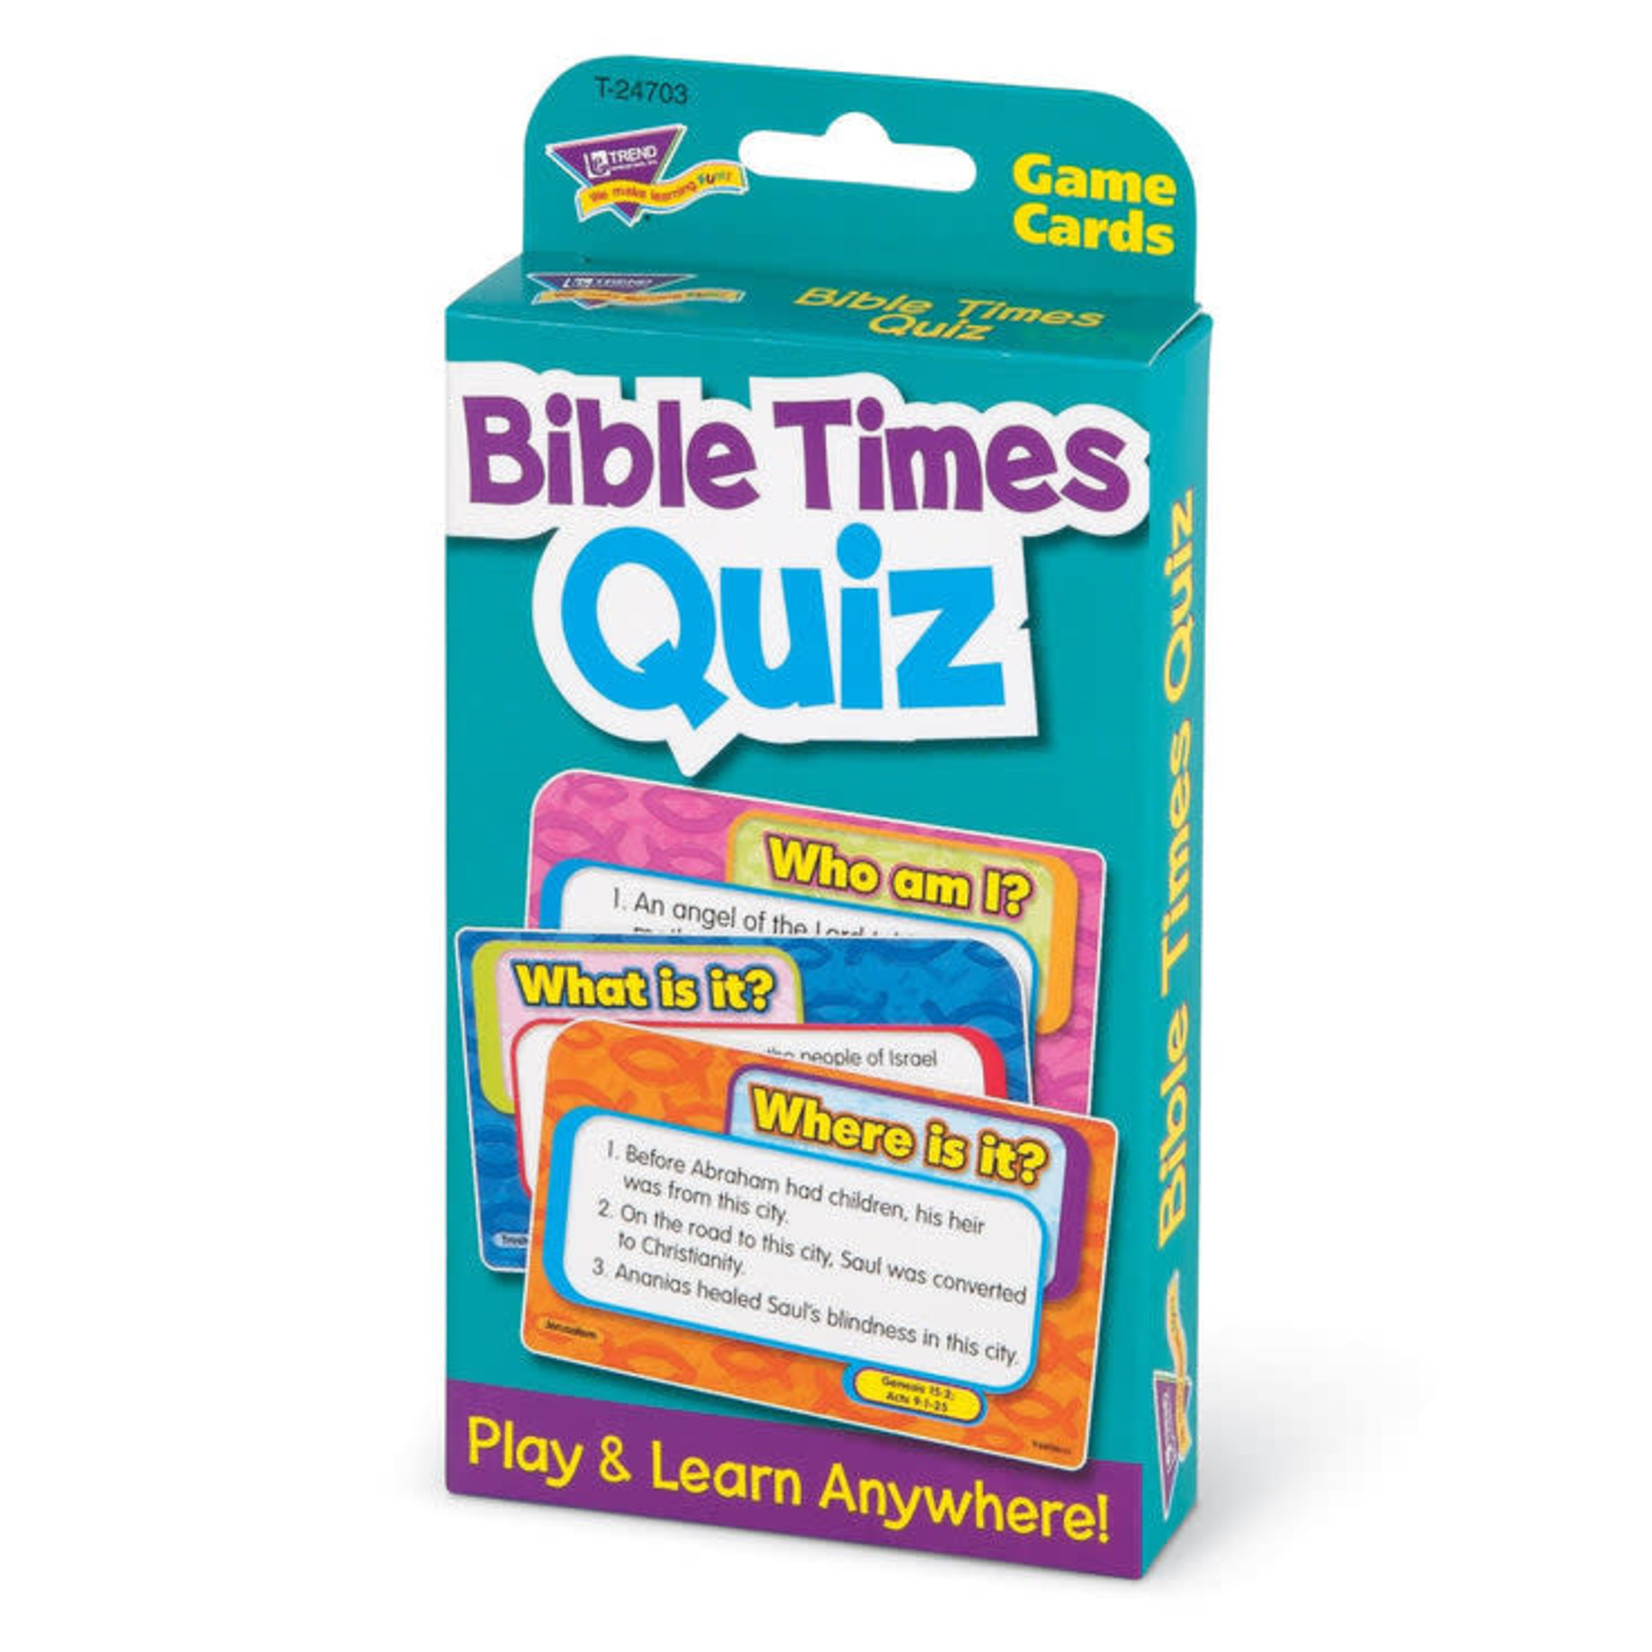 TREND ENTERPRISES INC Bible Times Quiz Challenge Cards®